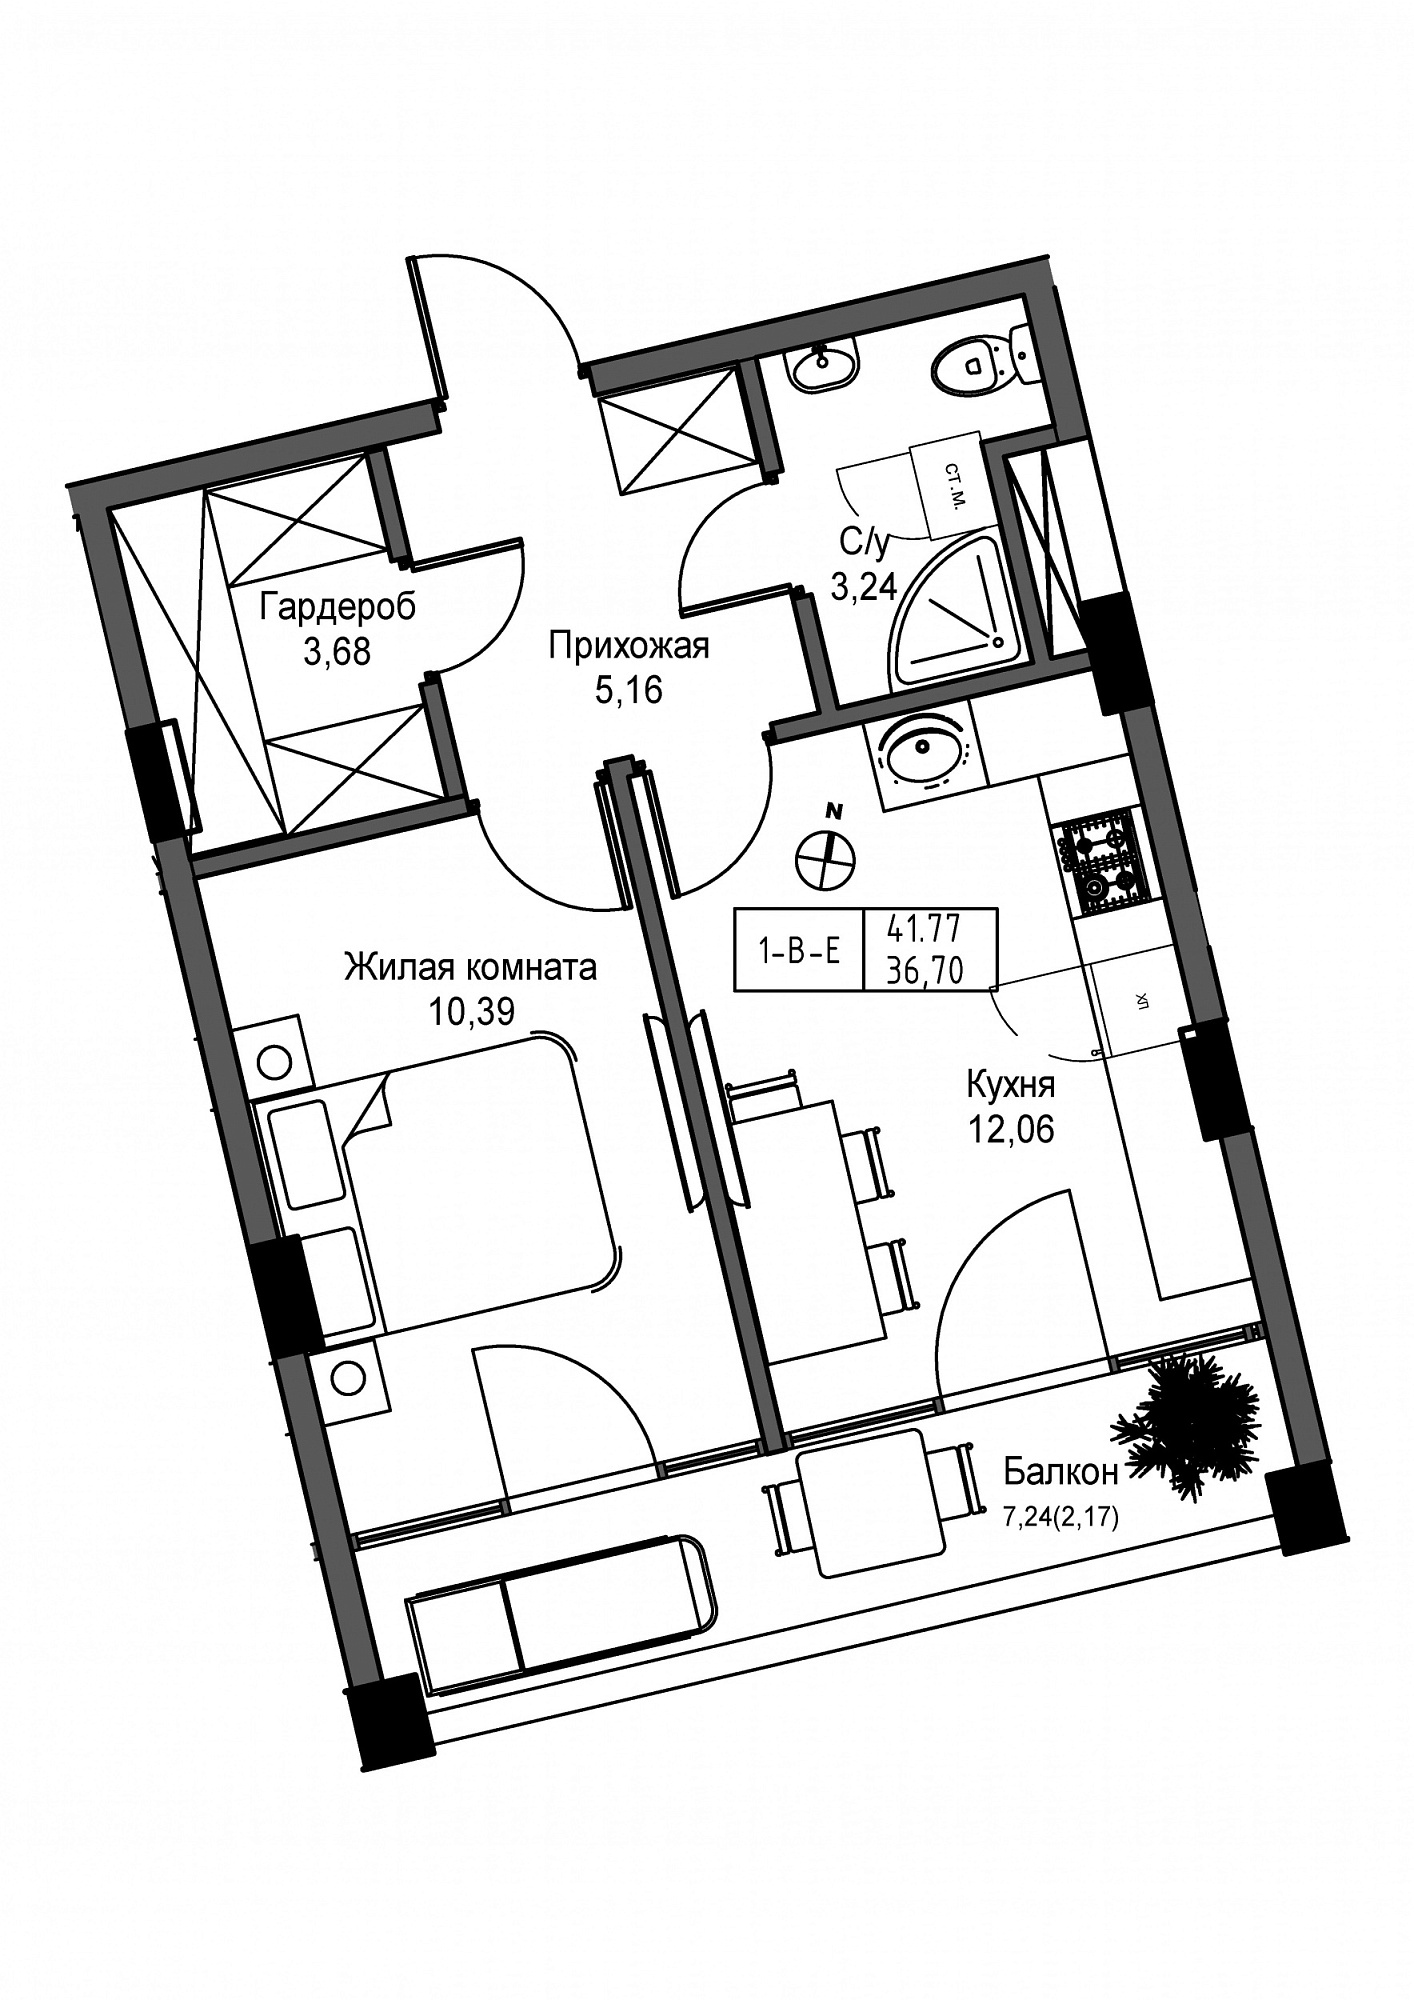 Планировка 1-к квартира площей 36.7м2, UM-004-05/0012.